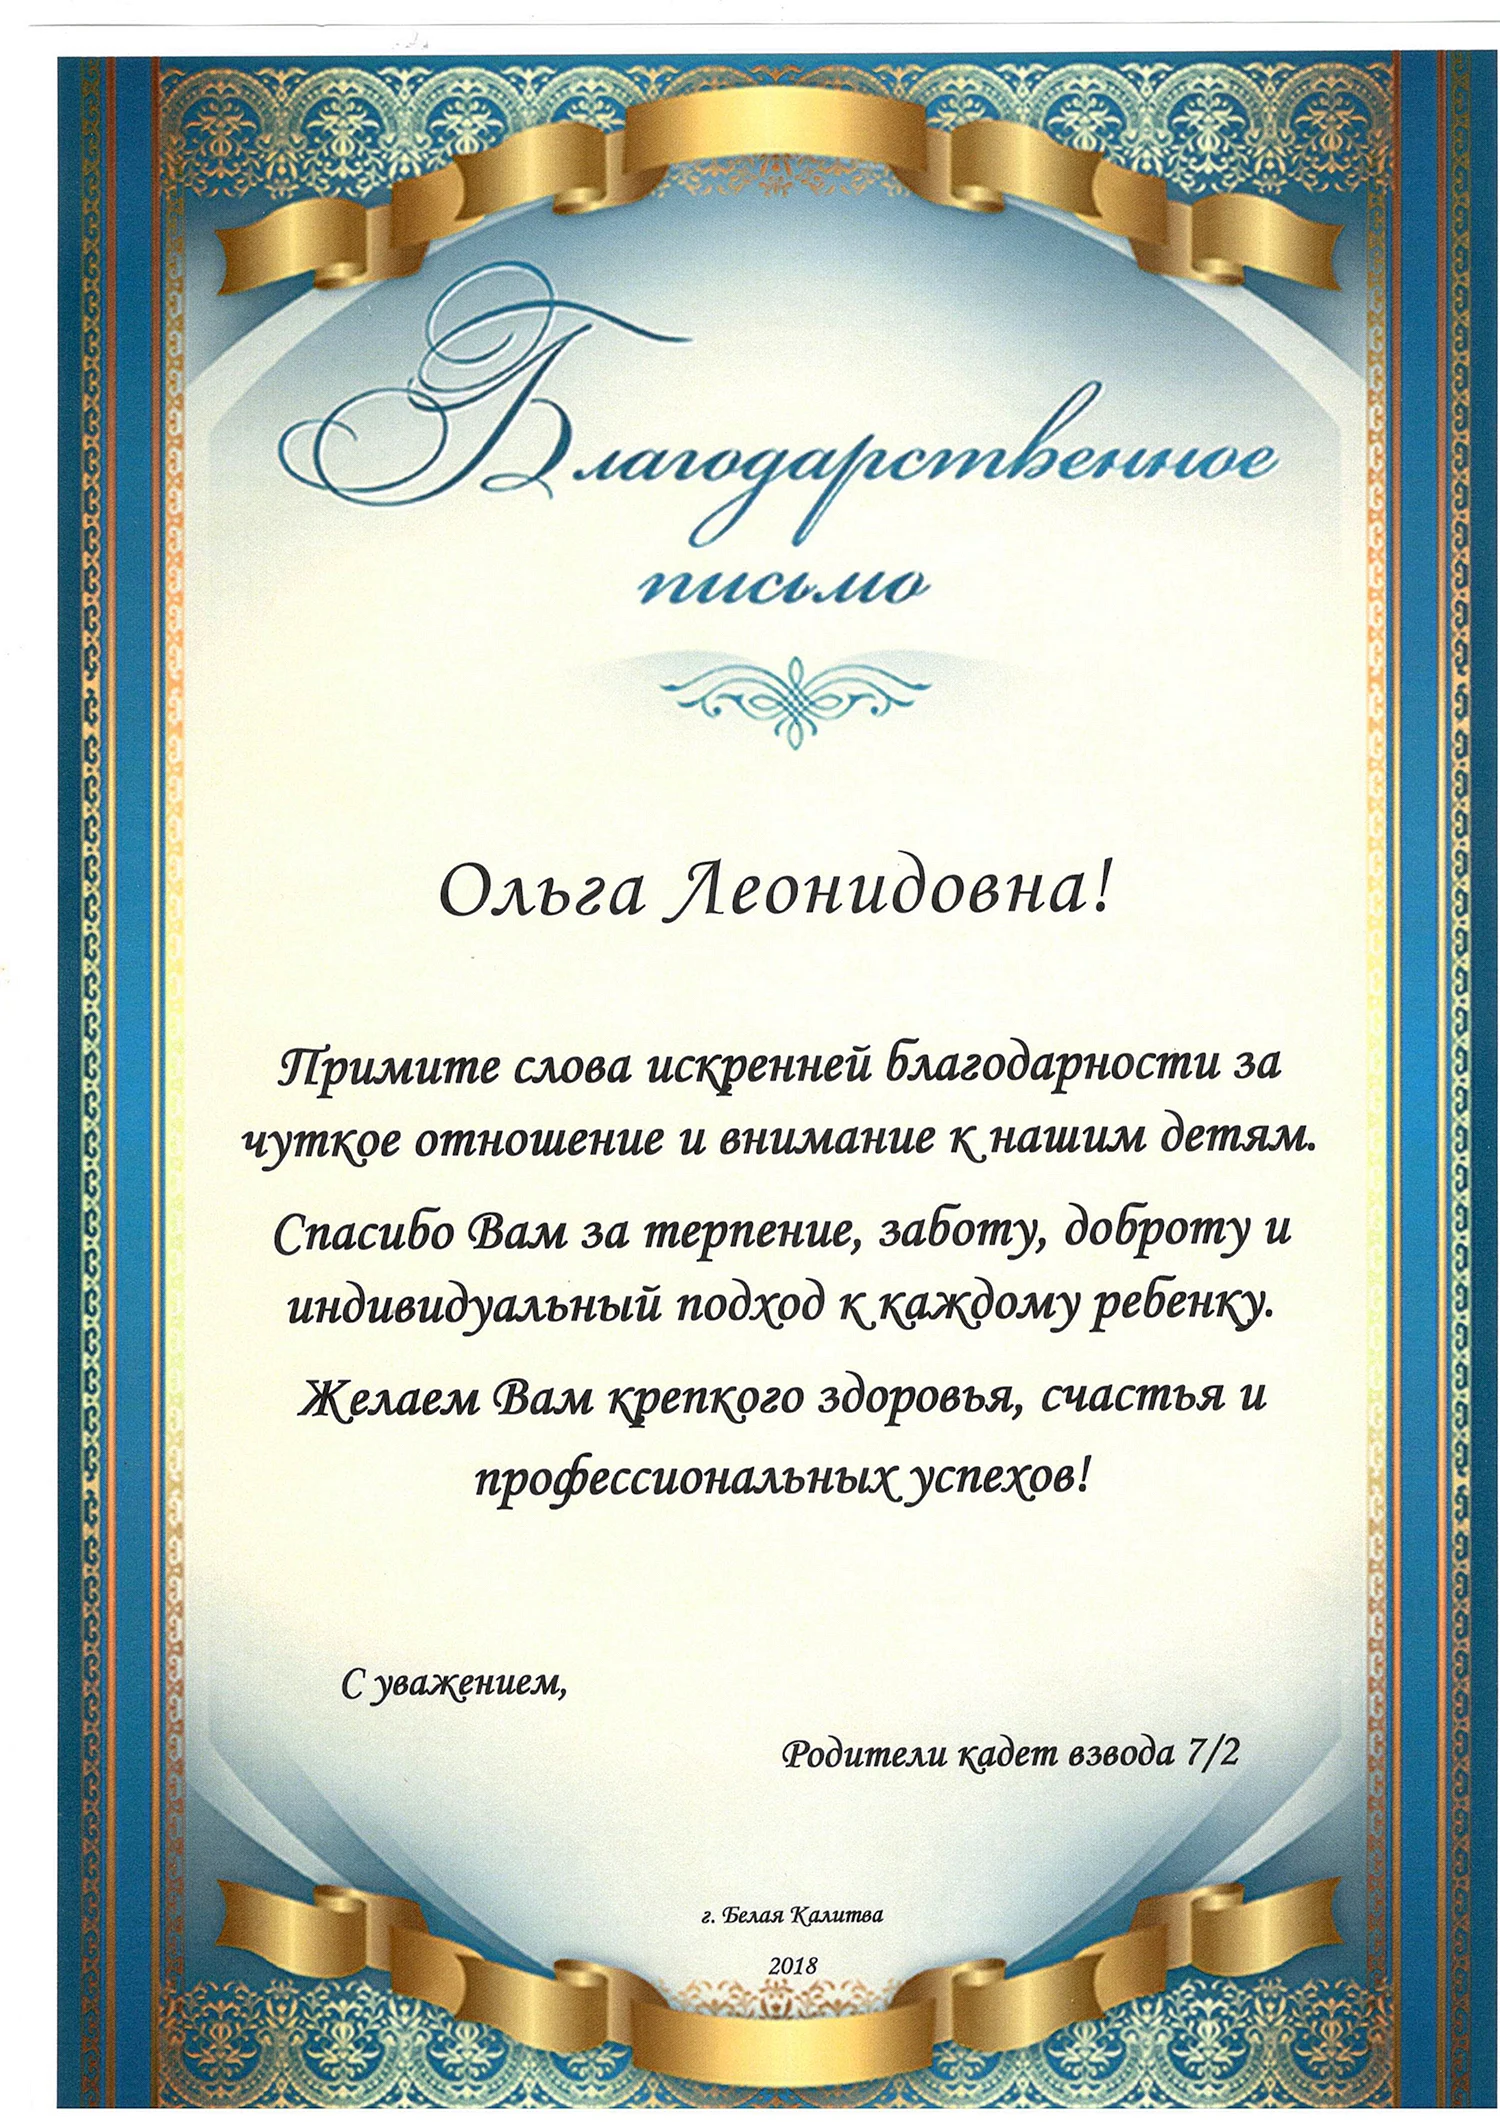 Грамоты, дипломы, благодарности - купить оптом в Нижнем Новгороде